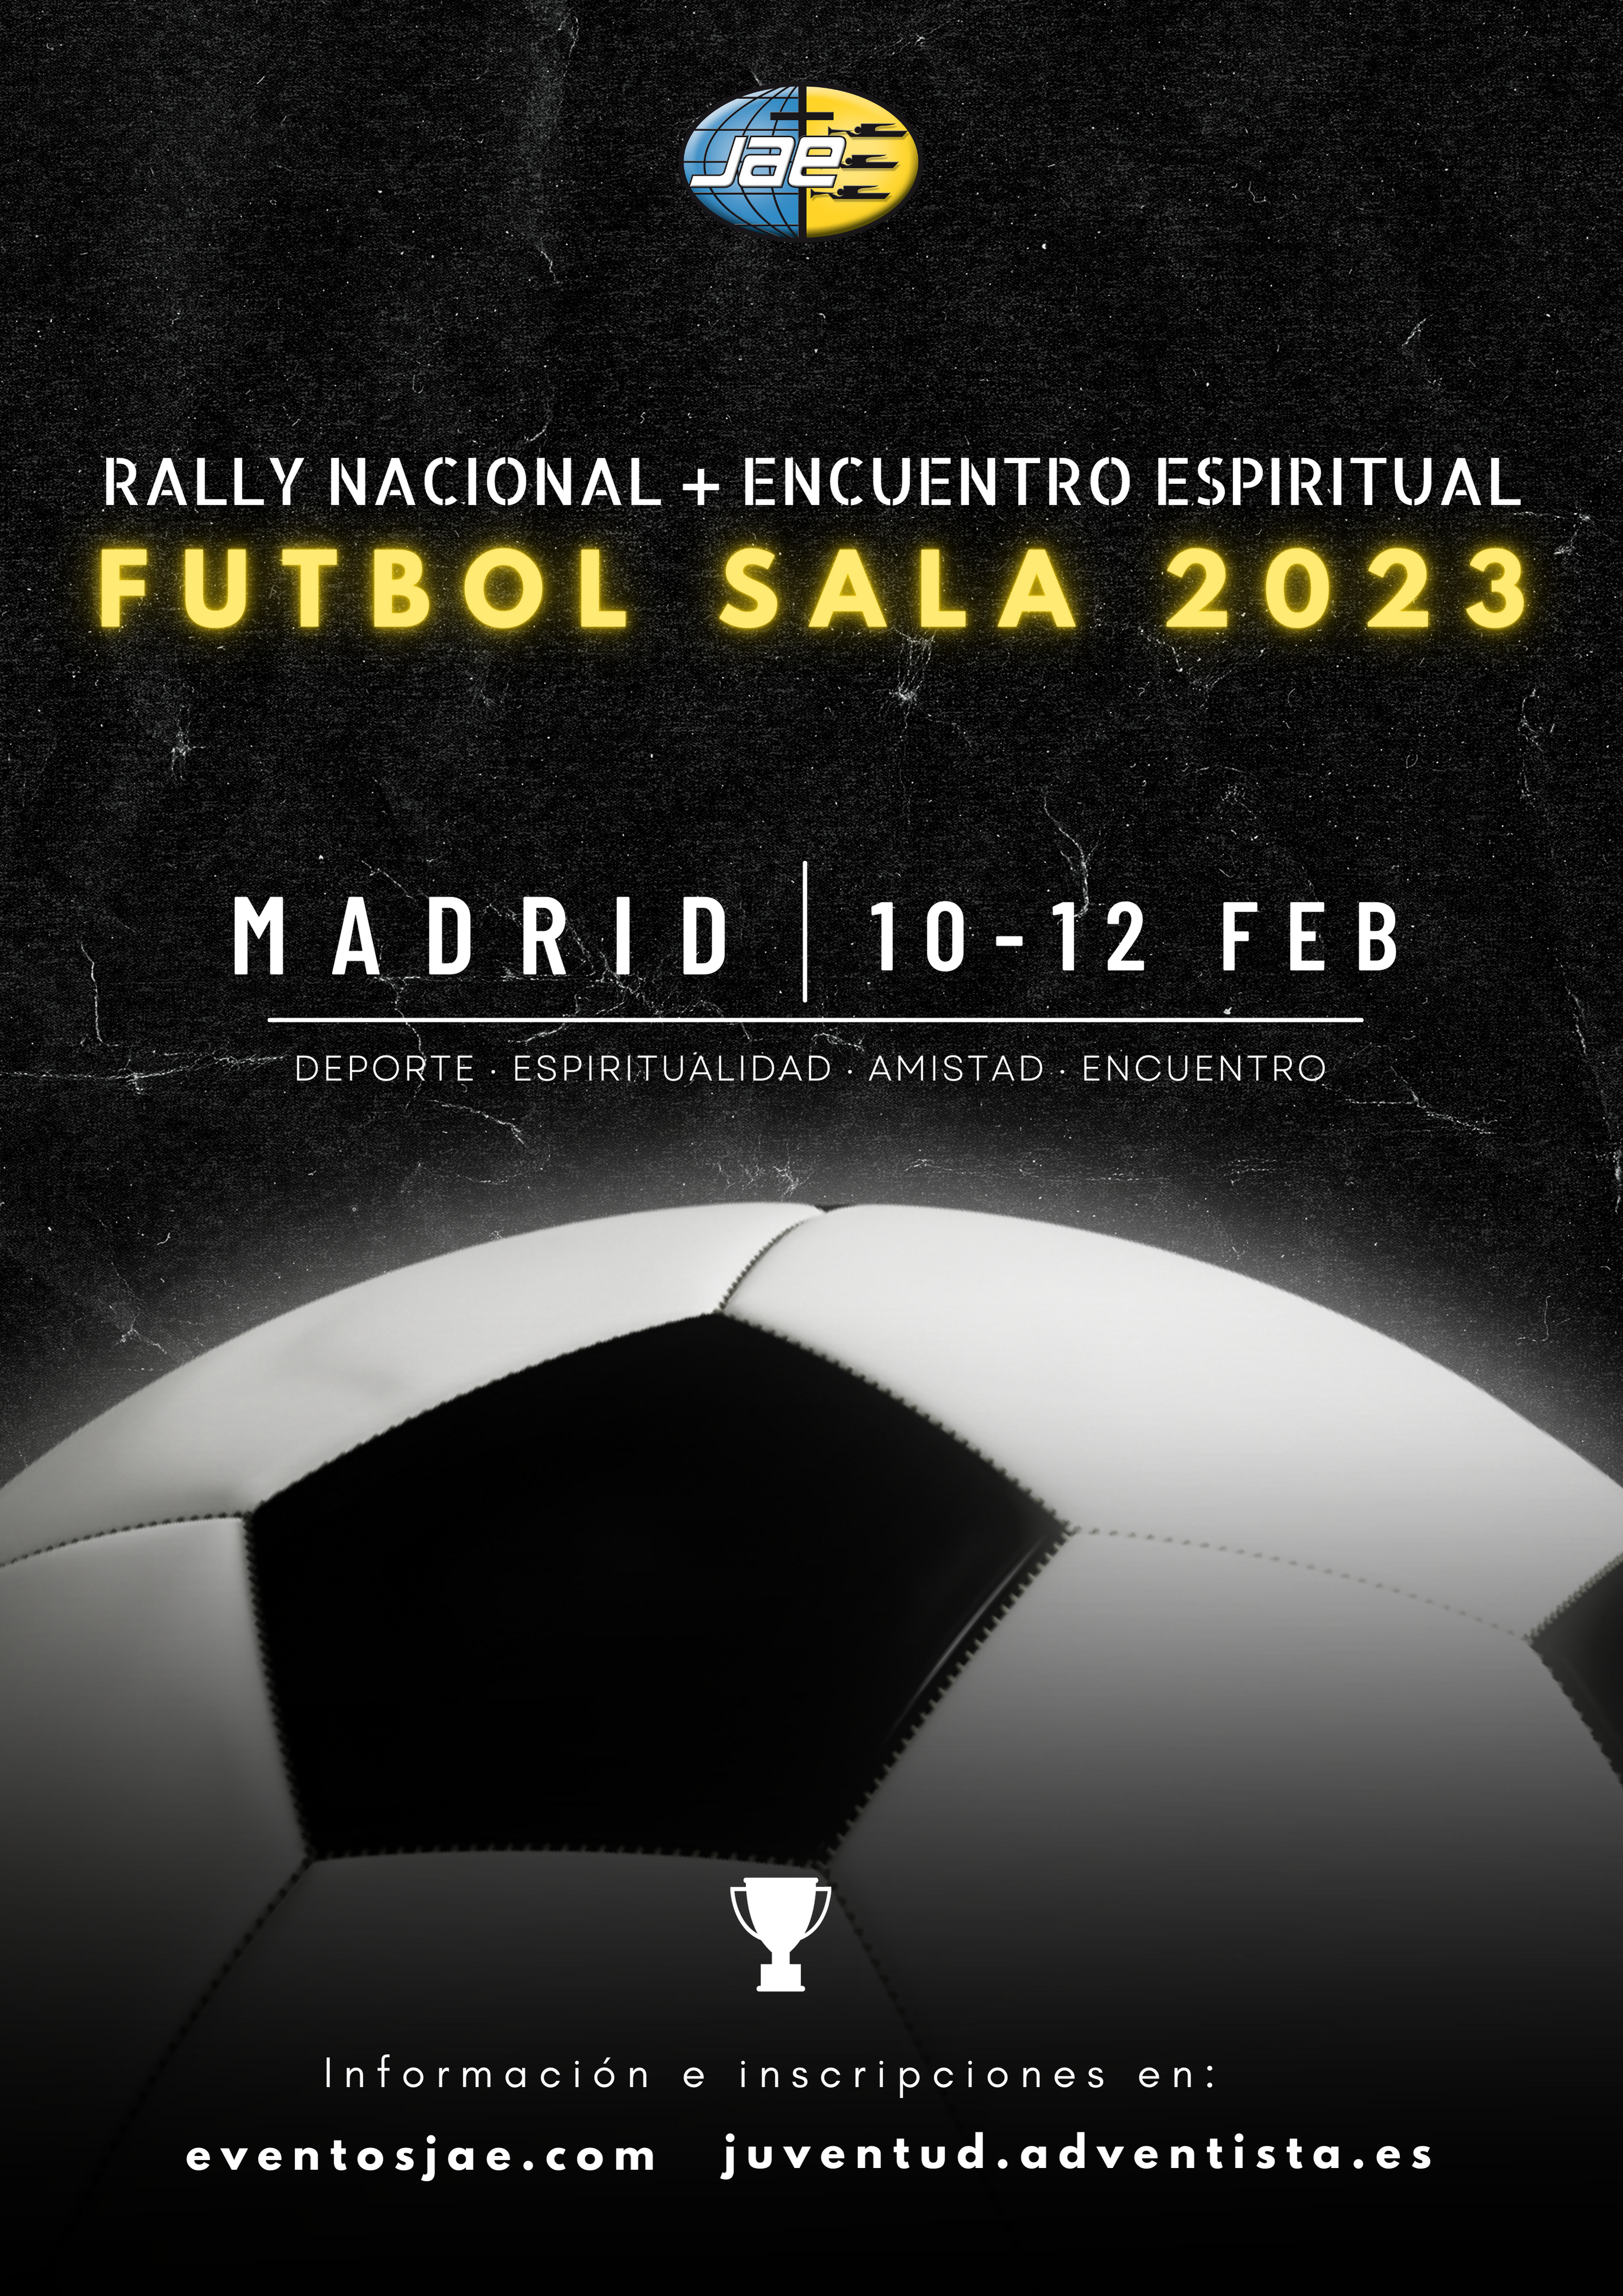 Encuentro Espiritual & Rally de Fútbol Sala